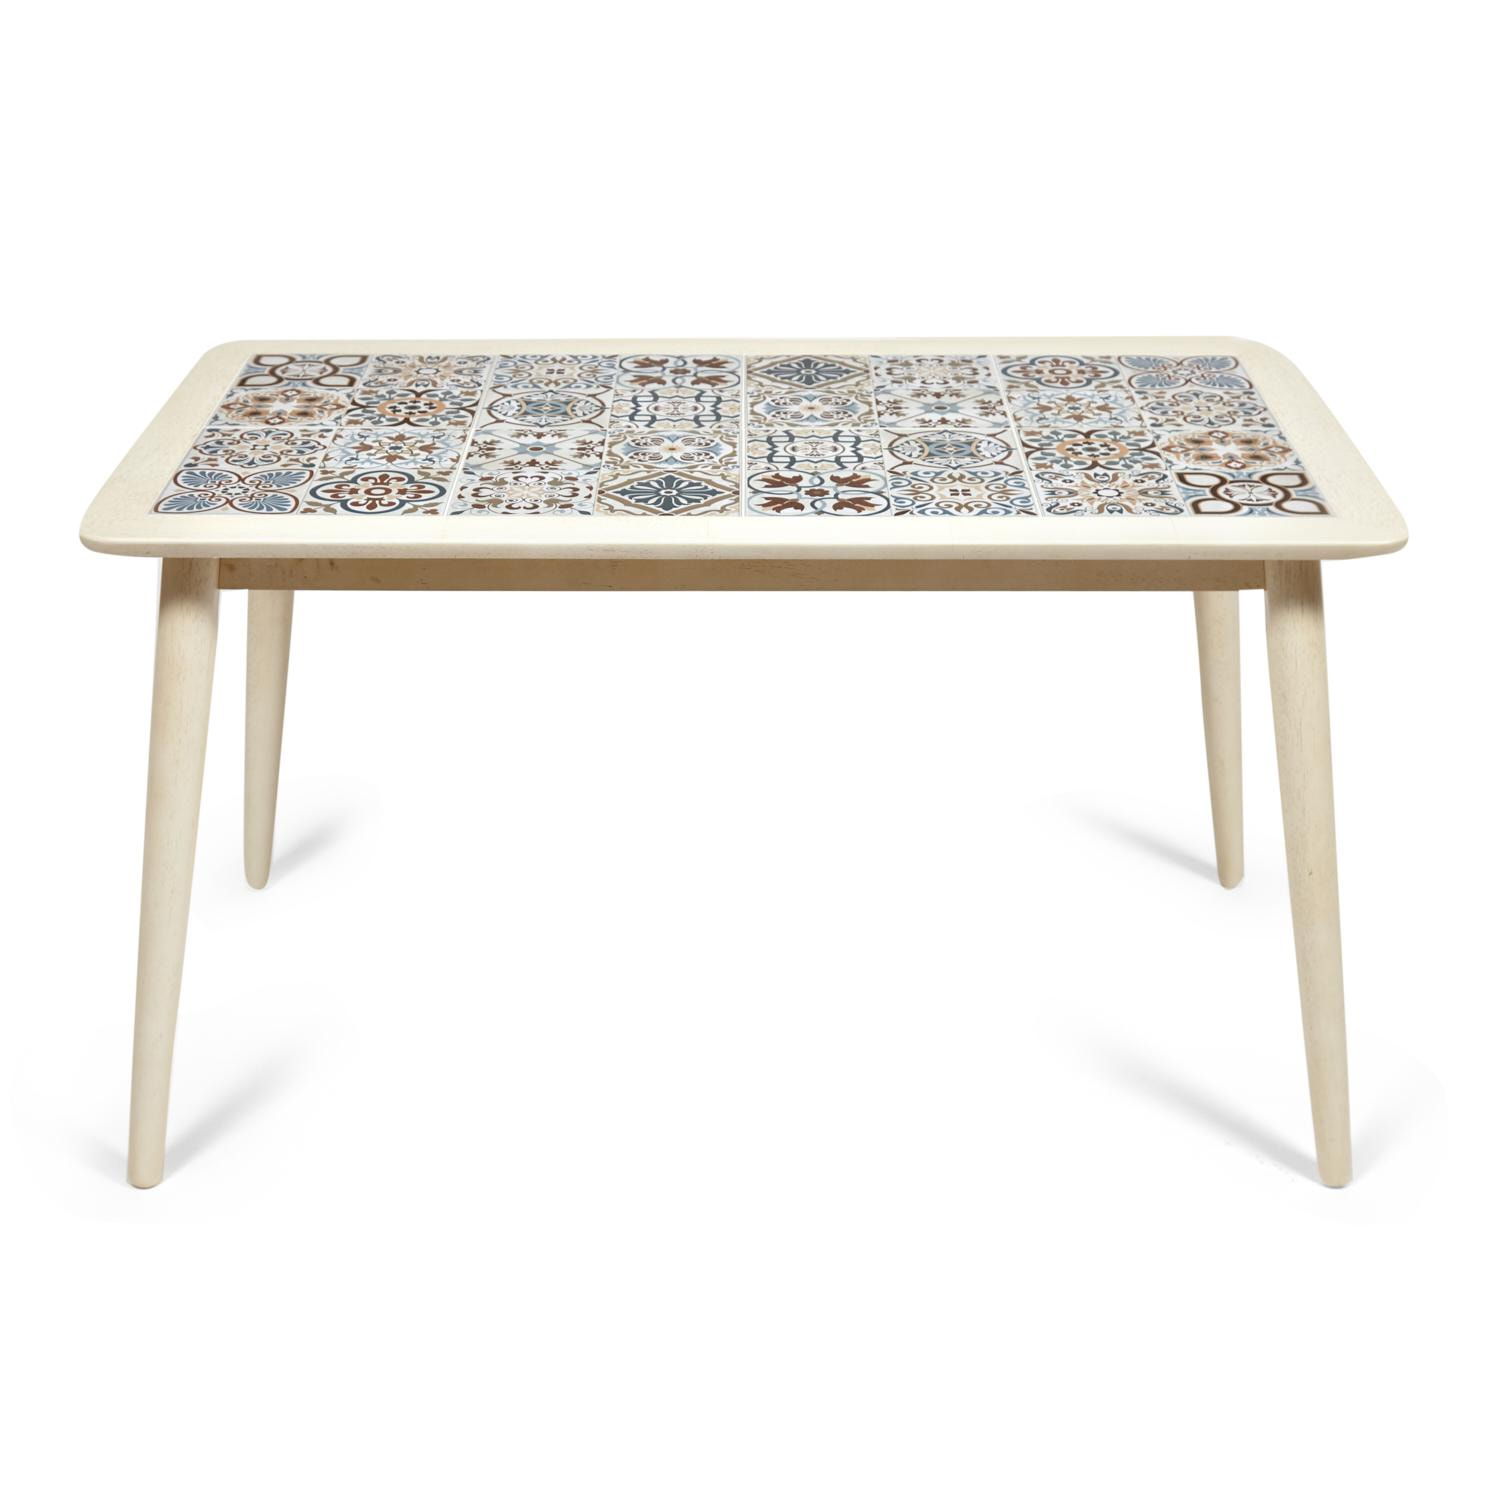 CT3052 Tanger стол с плиткой дерево гевея/плитка, 74*134*75см, античный белый, рисунок - марокко